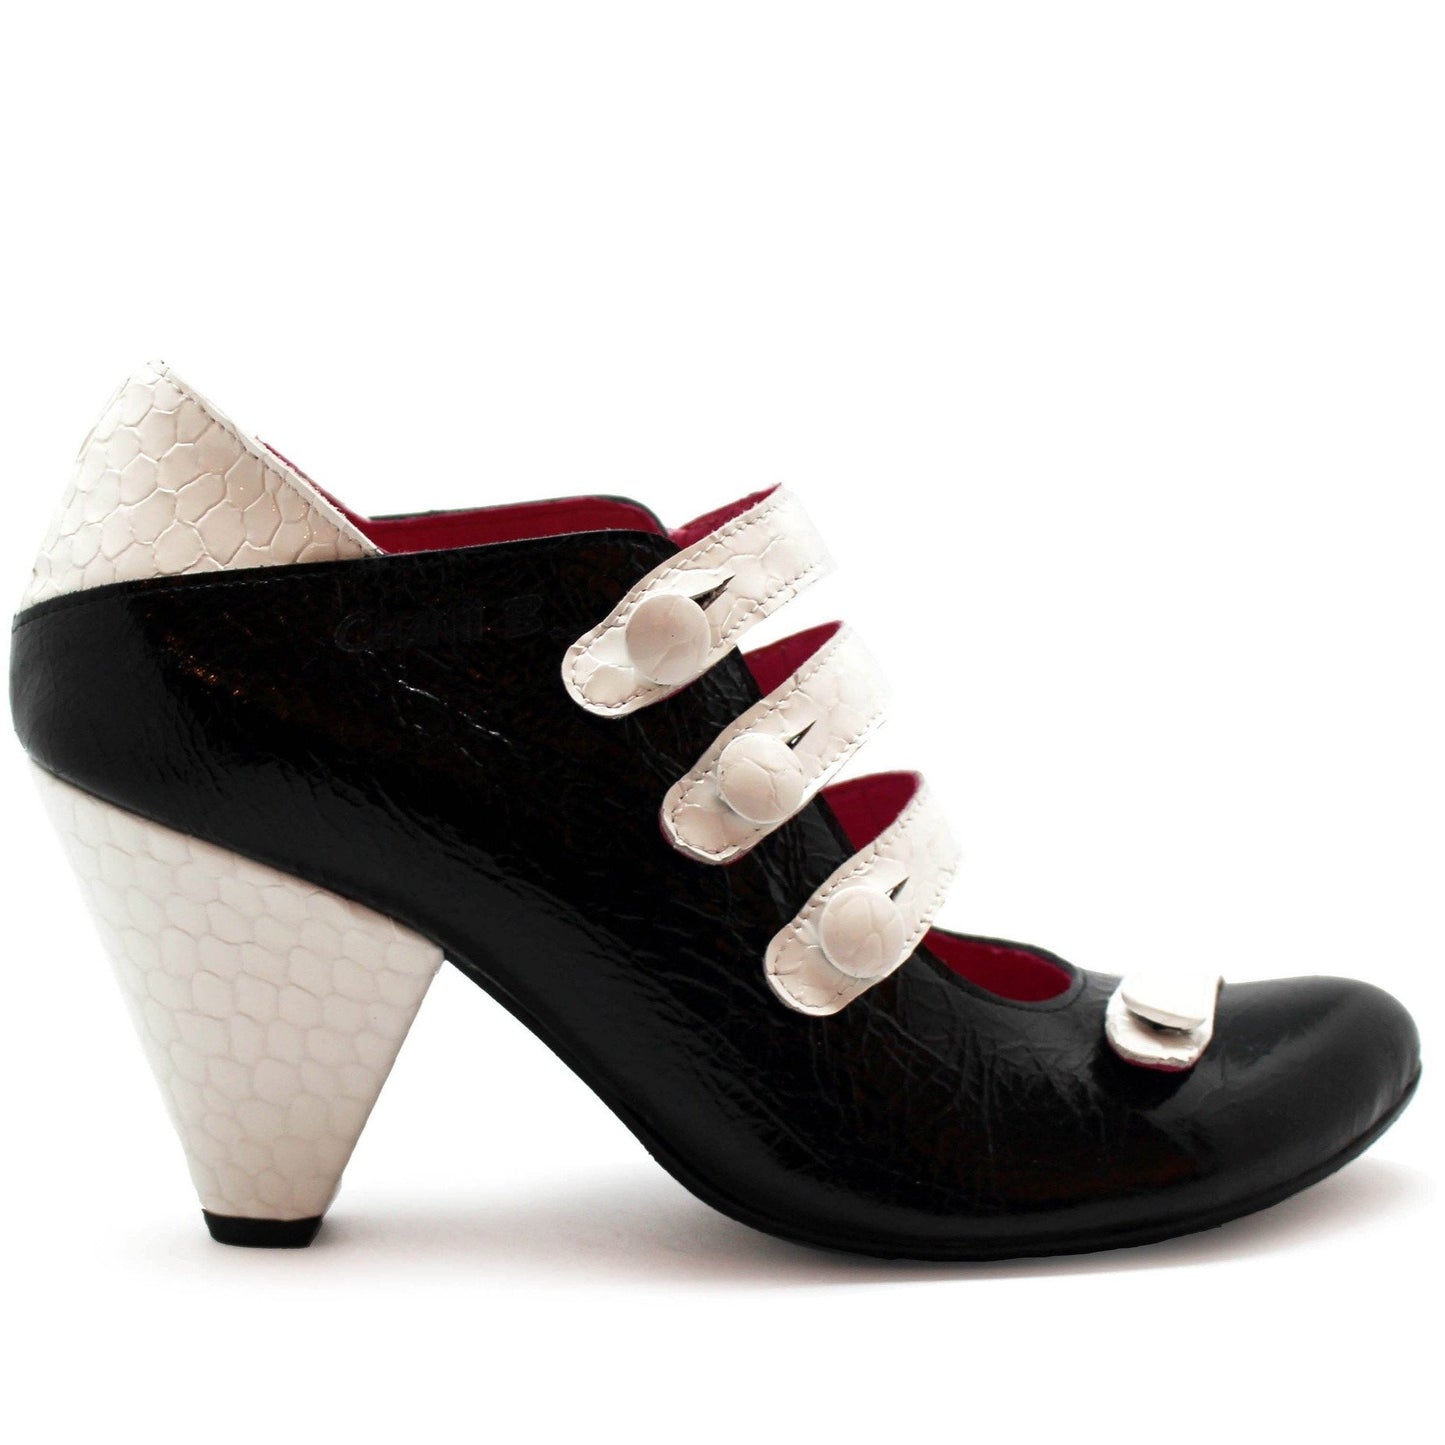 Voila - Black/White bar shoe